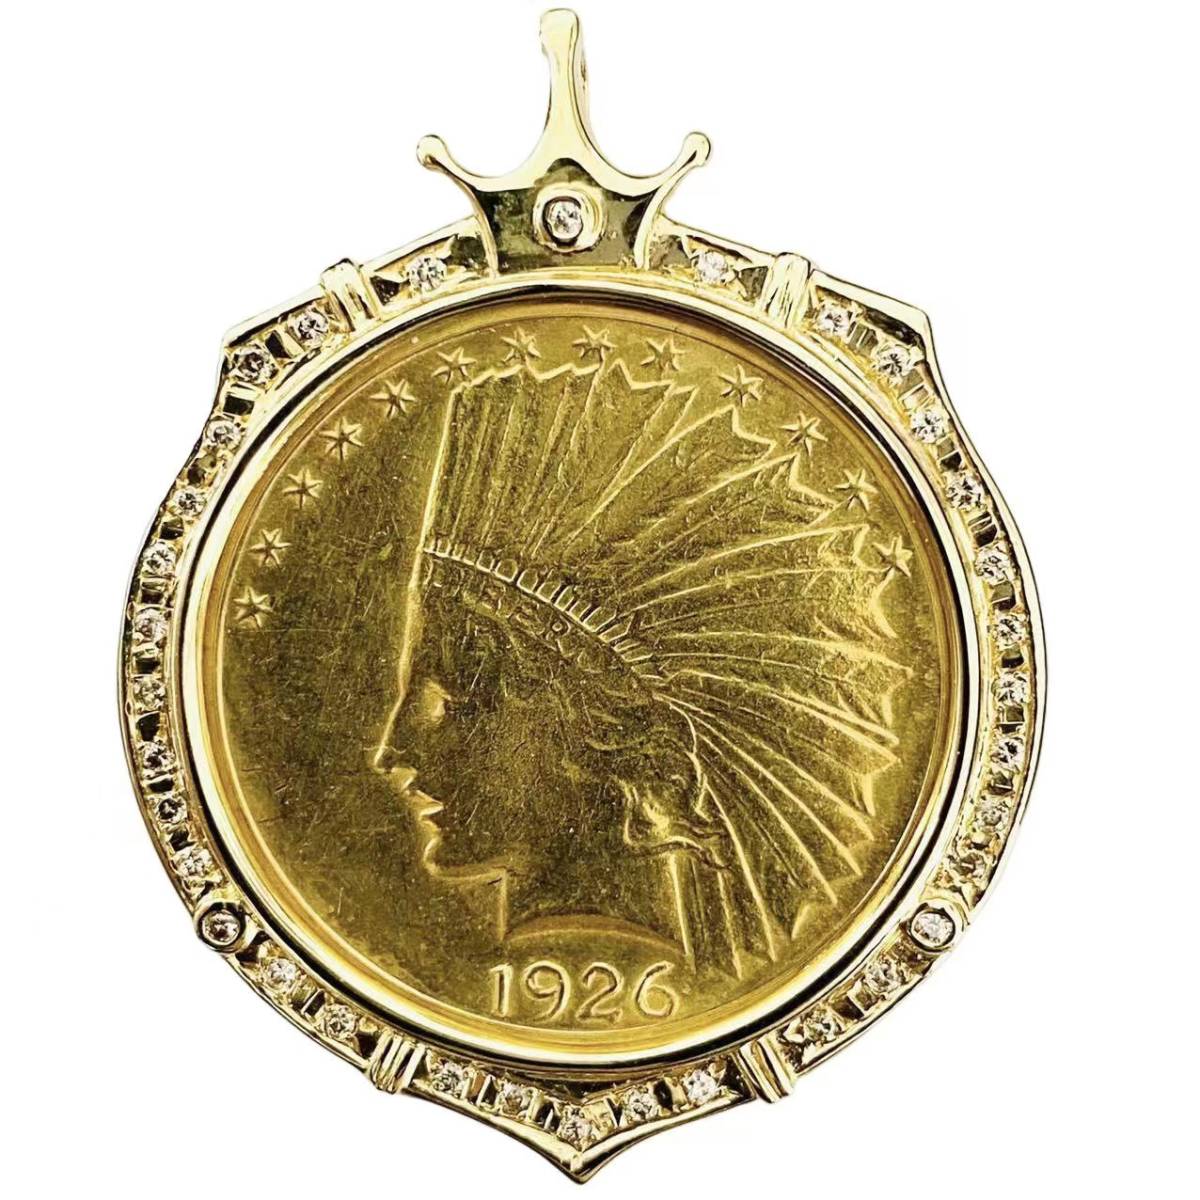 インディアン イーグル金貨 1926年 23.12g アメリカ 18金 21.6金 ダイヤモンド 0.25 イエローゴールド コイントップ コレクション